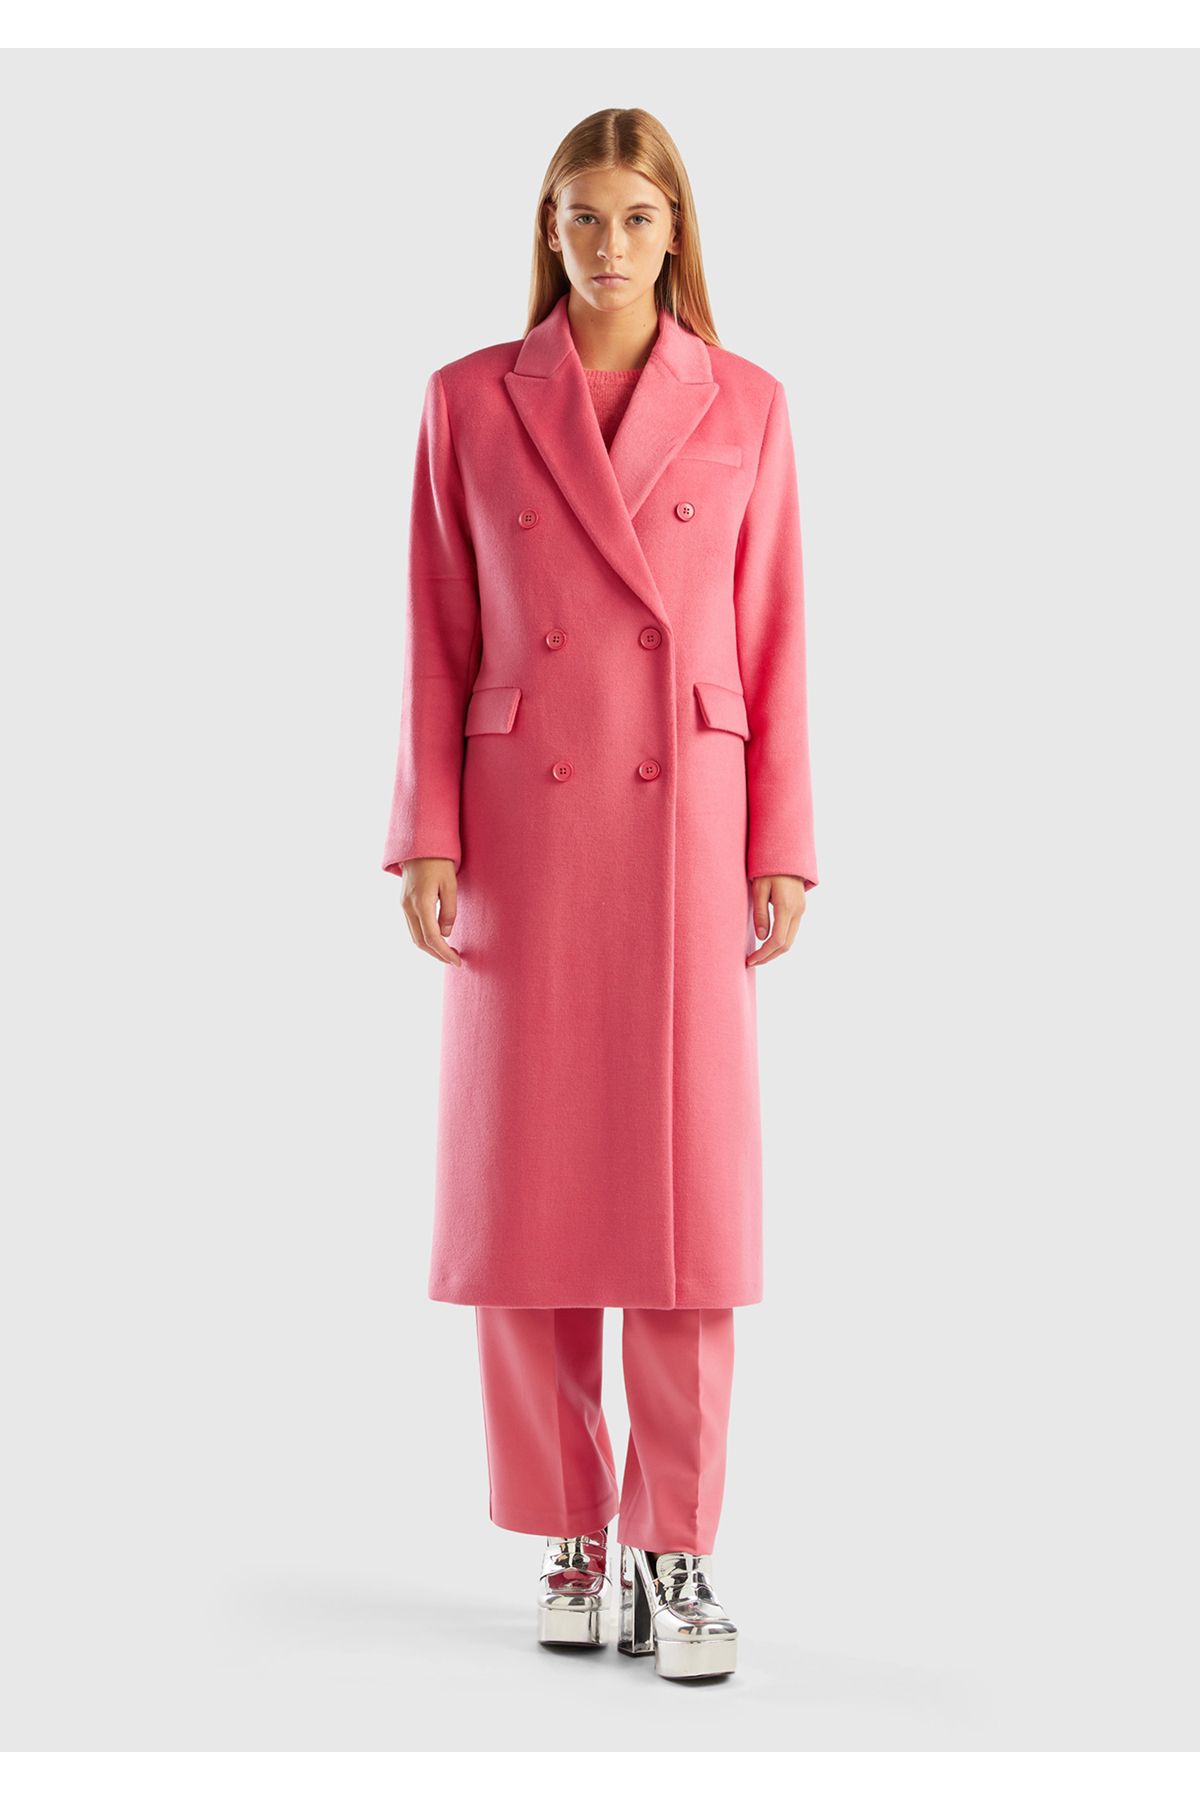 United Colors of Benetton Kadın Gül Kurusu Kruvaze Palto